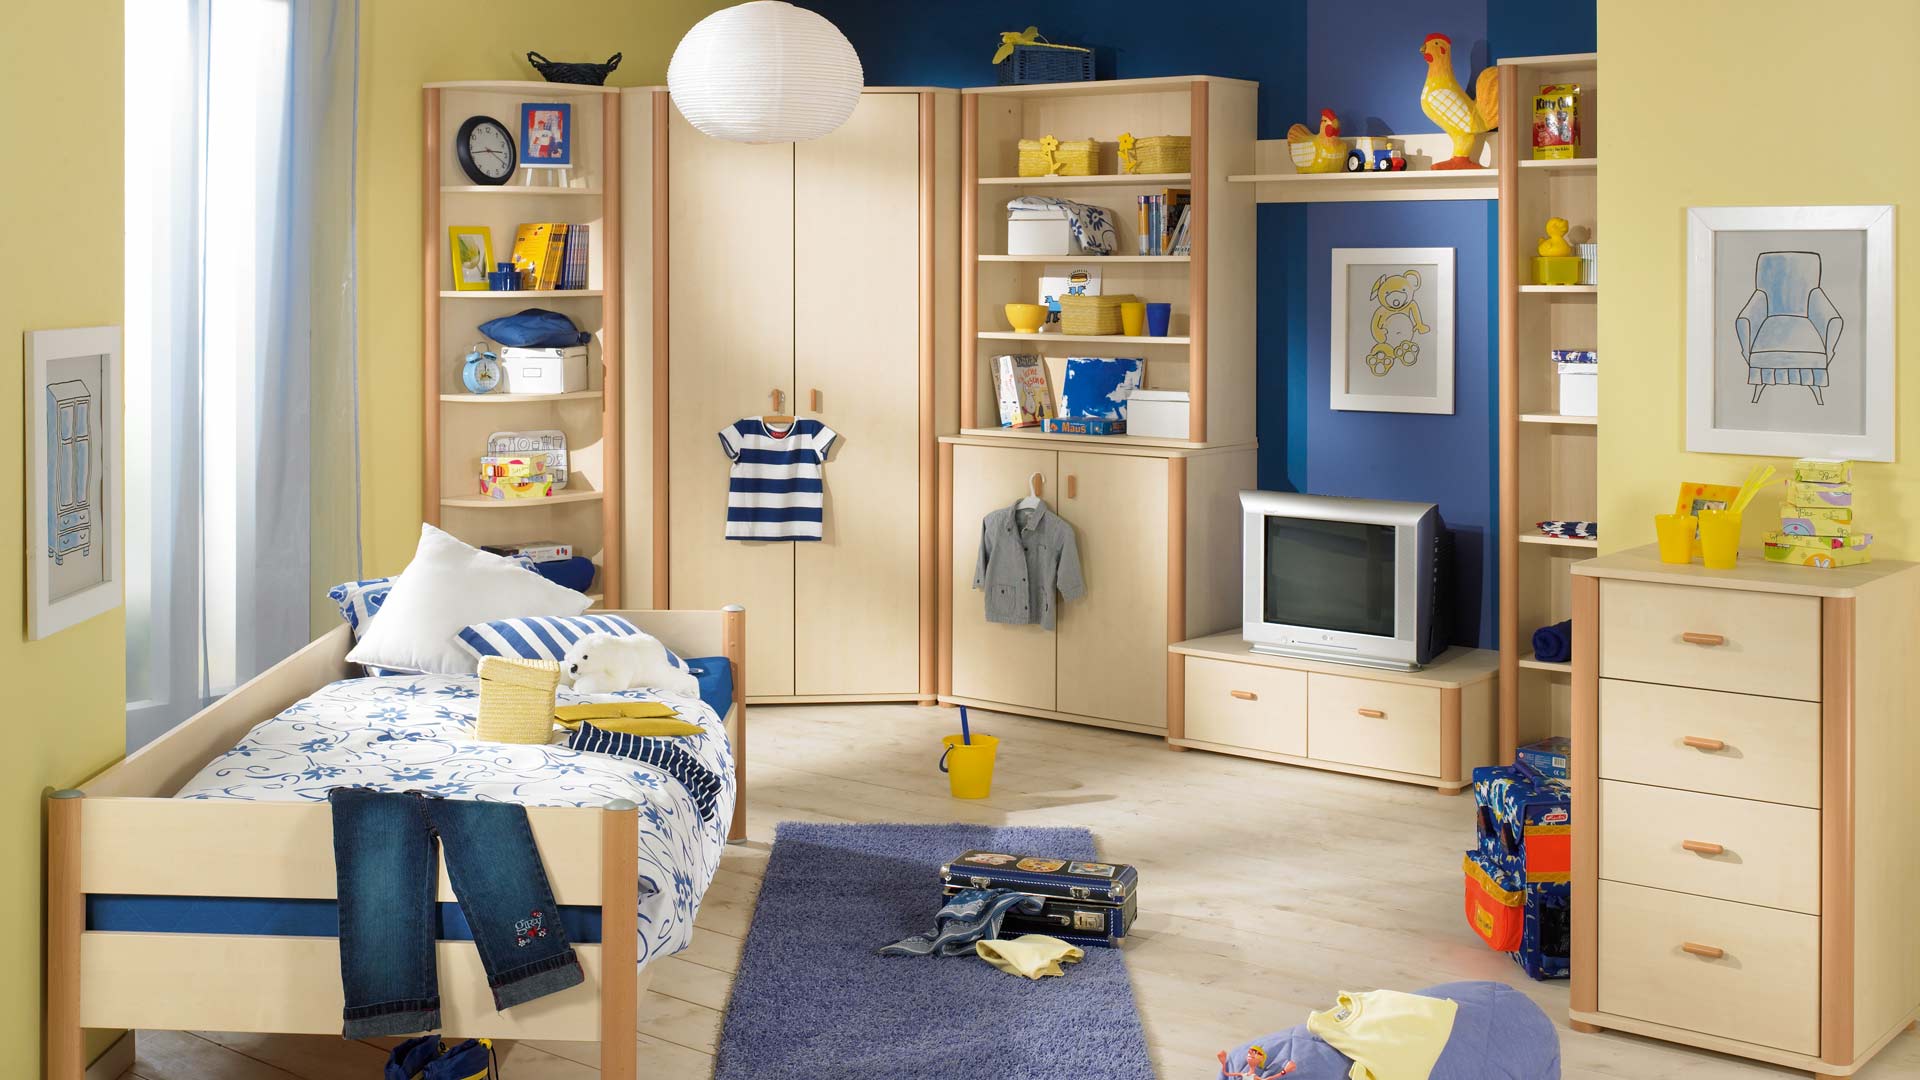 Бежевая мебель в морском стиле в комнате для мальчика